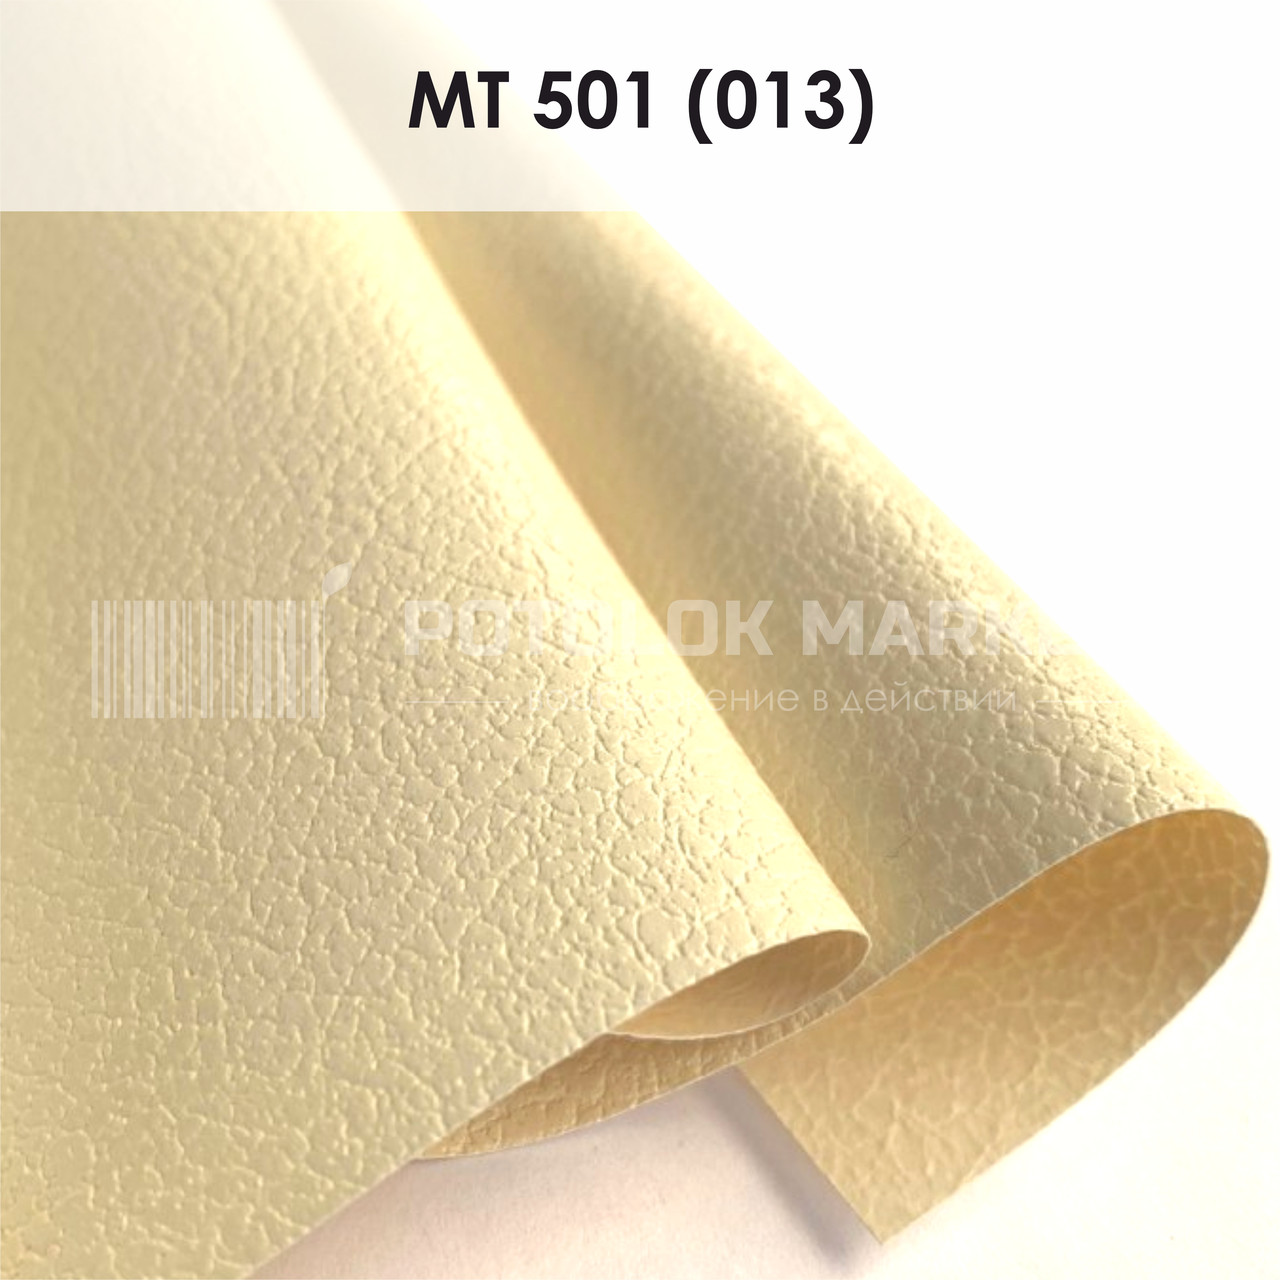 MT 501 (013) "Крупна шкіра" (ширина до 3,2 мп). Текстурна ПВХ плівка